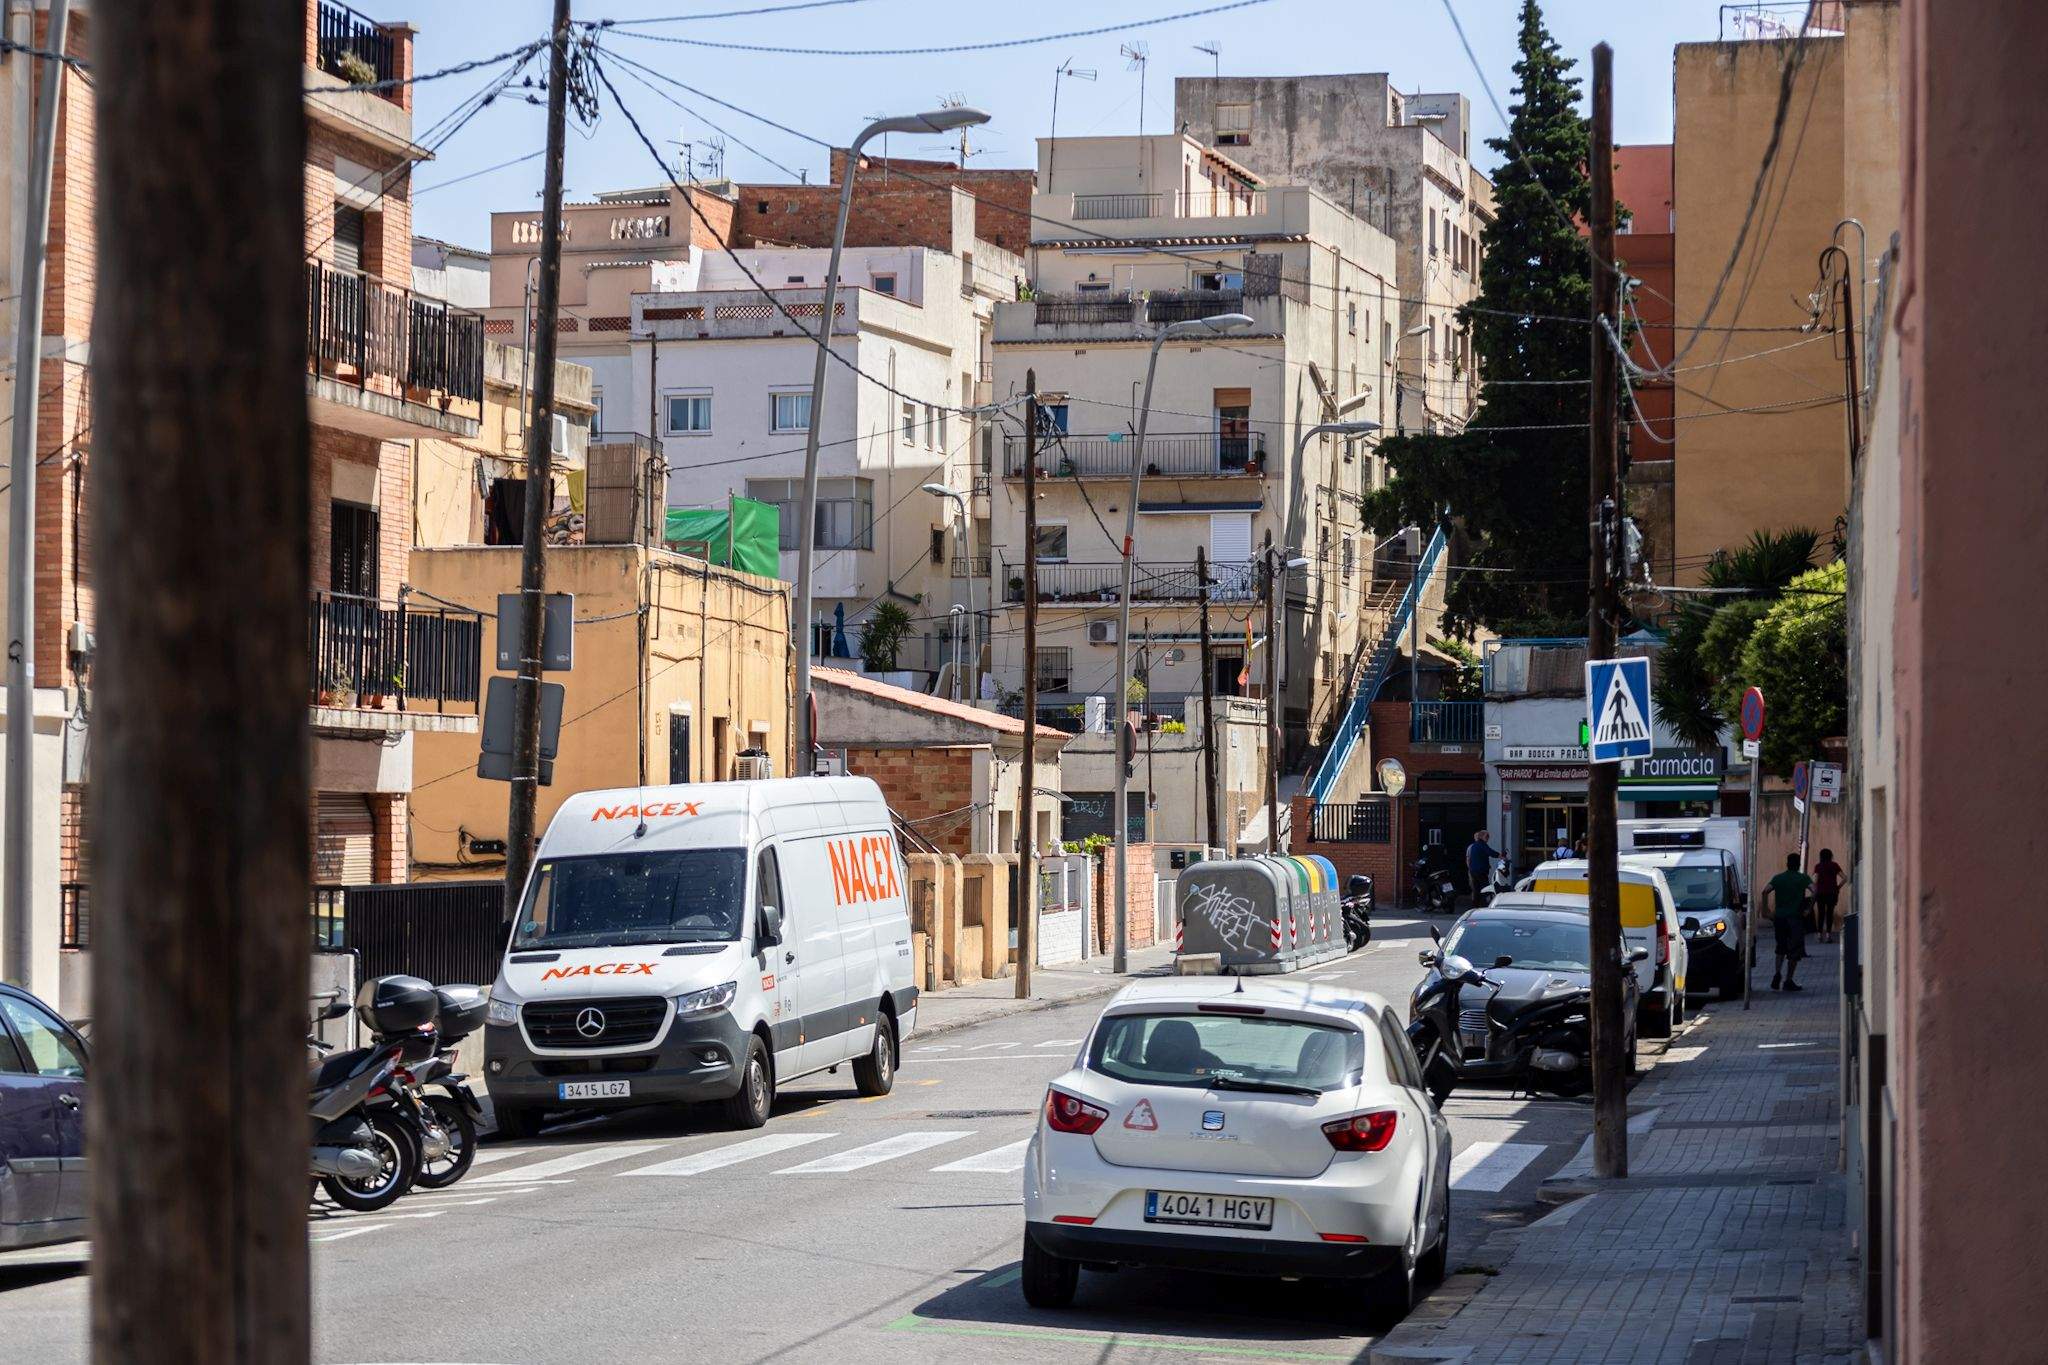 Barcelona retirarà 9 quilòmetres de cablejat aeri i pals elèctrics de les voreres